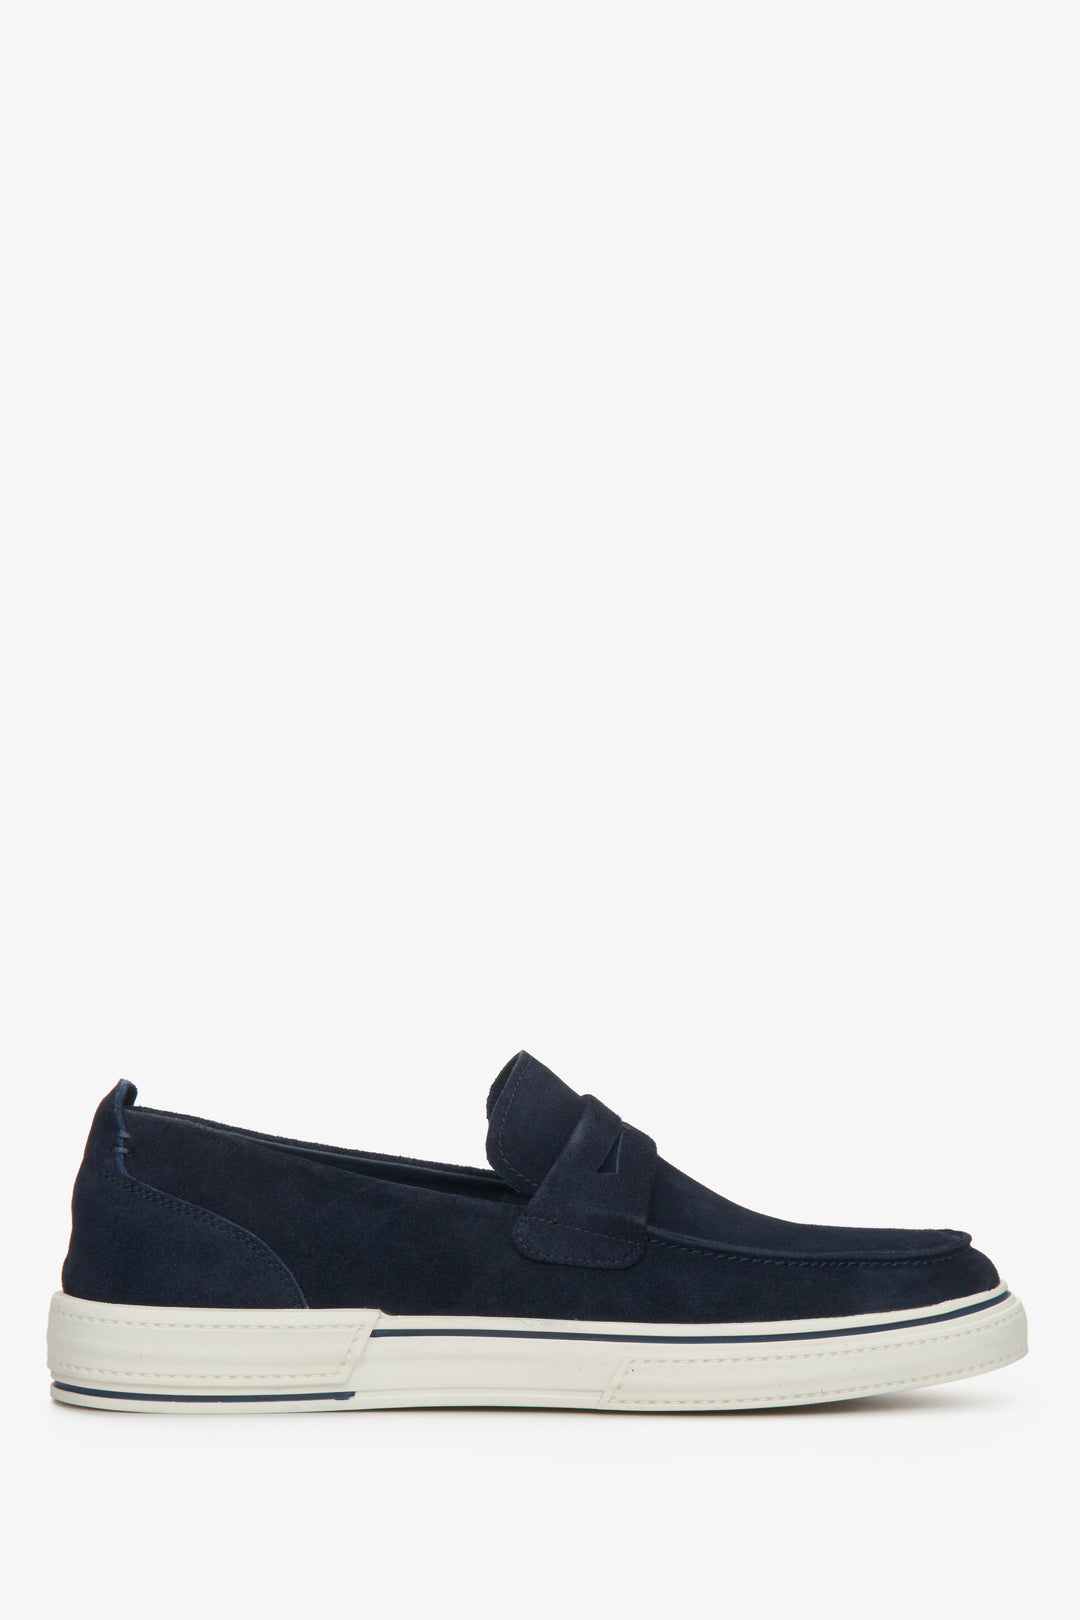 Navy blue velvet men's loafers for spring, slip-on style - shoe profile.